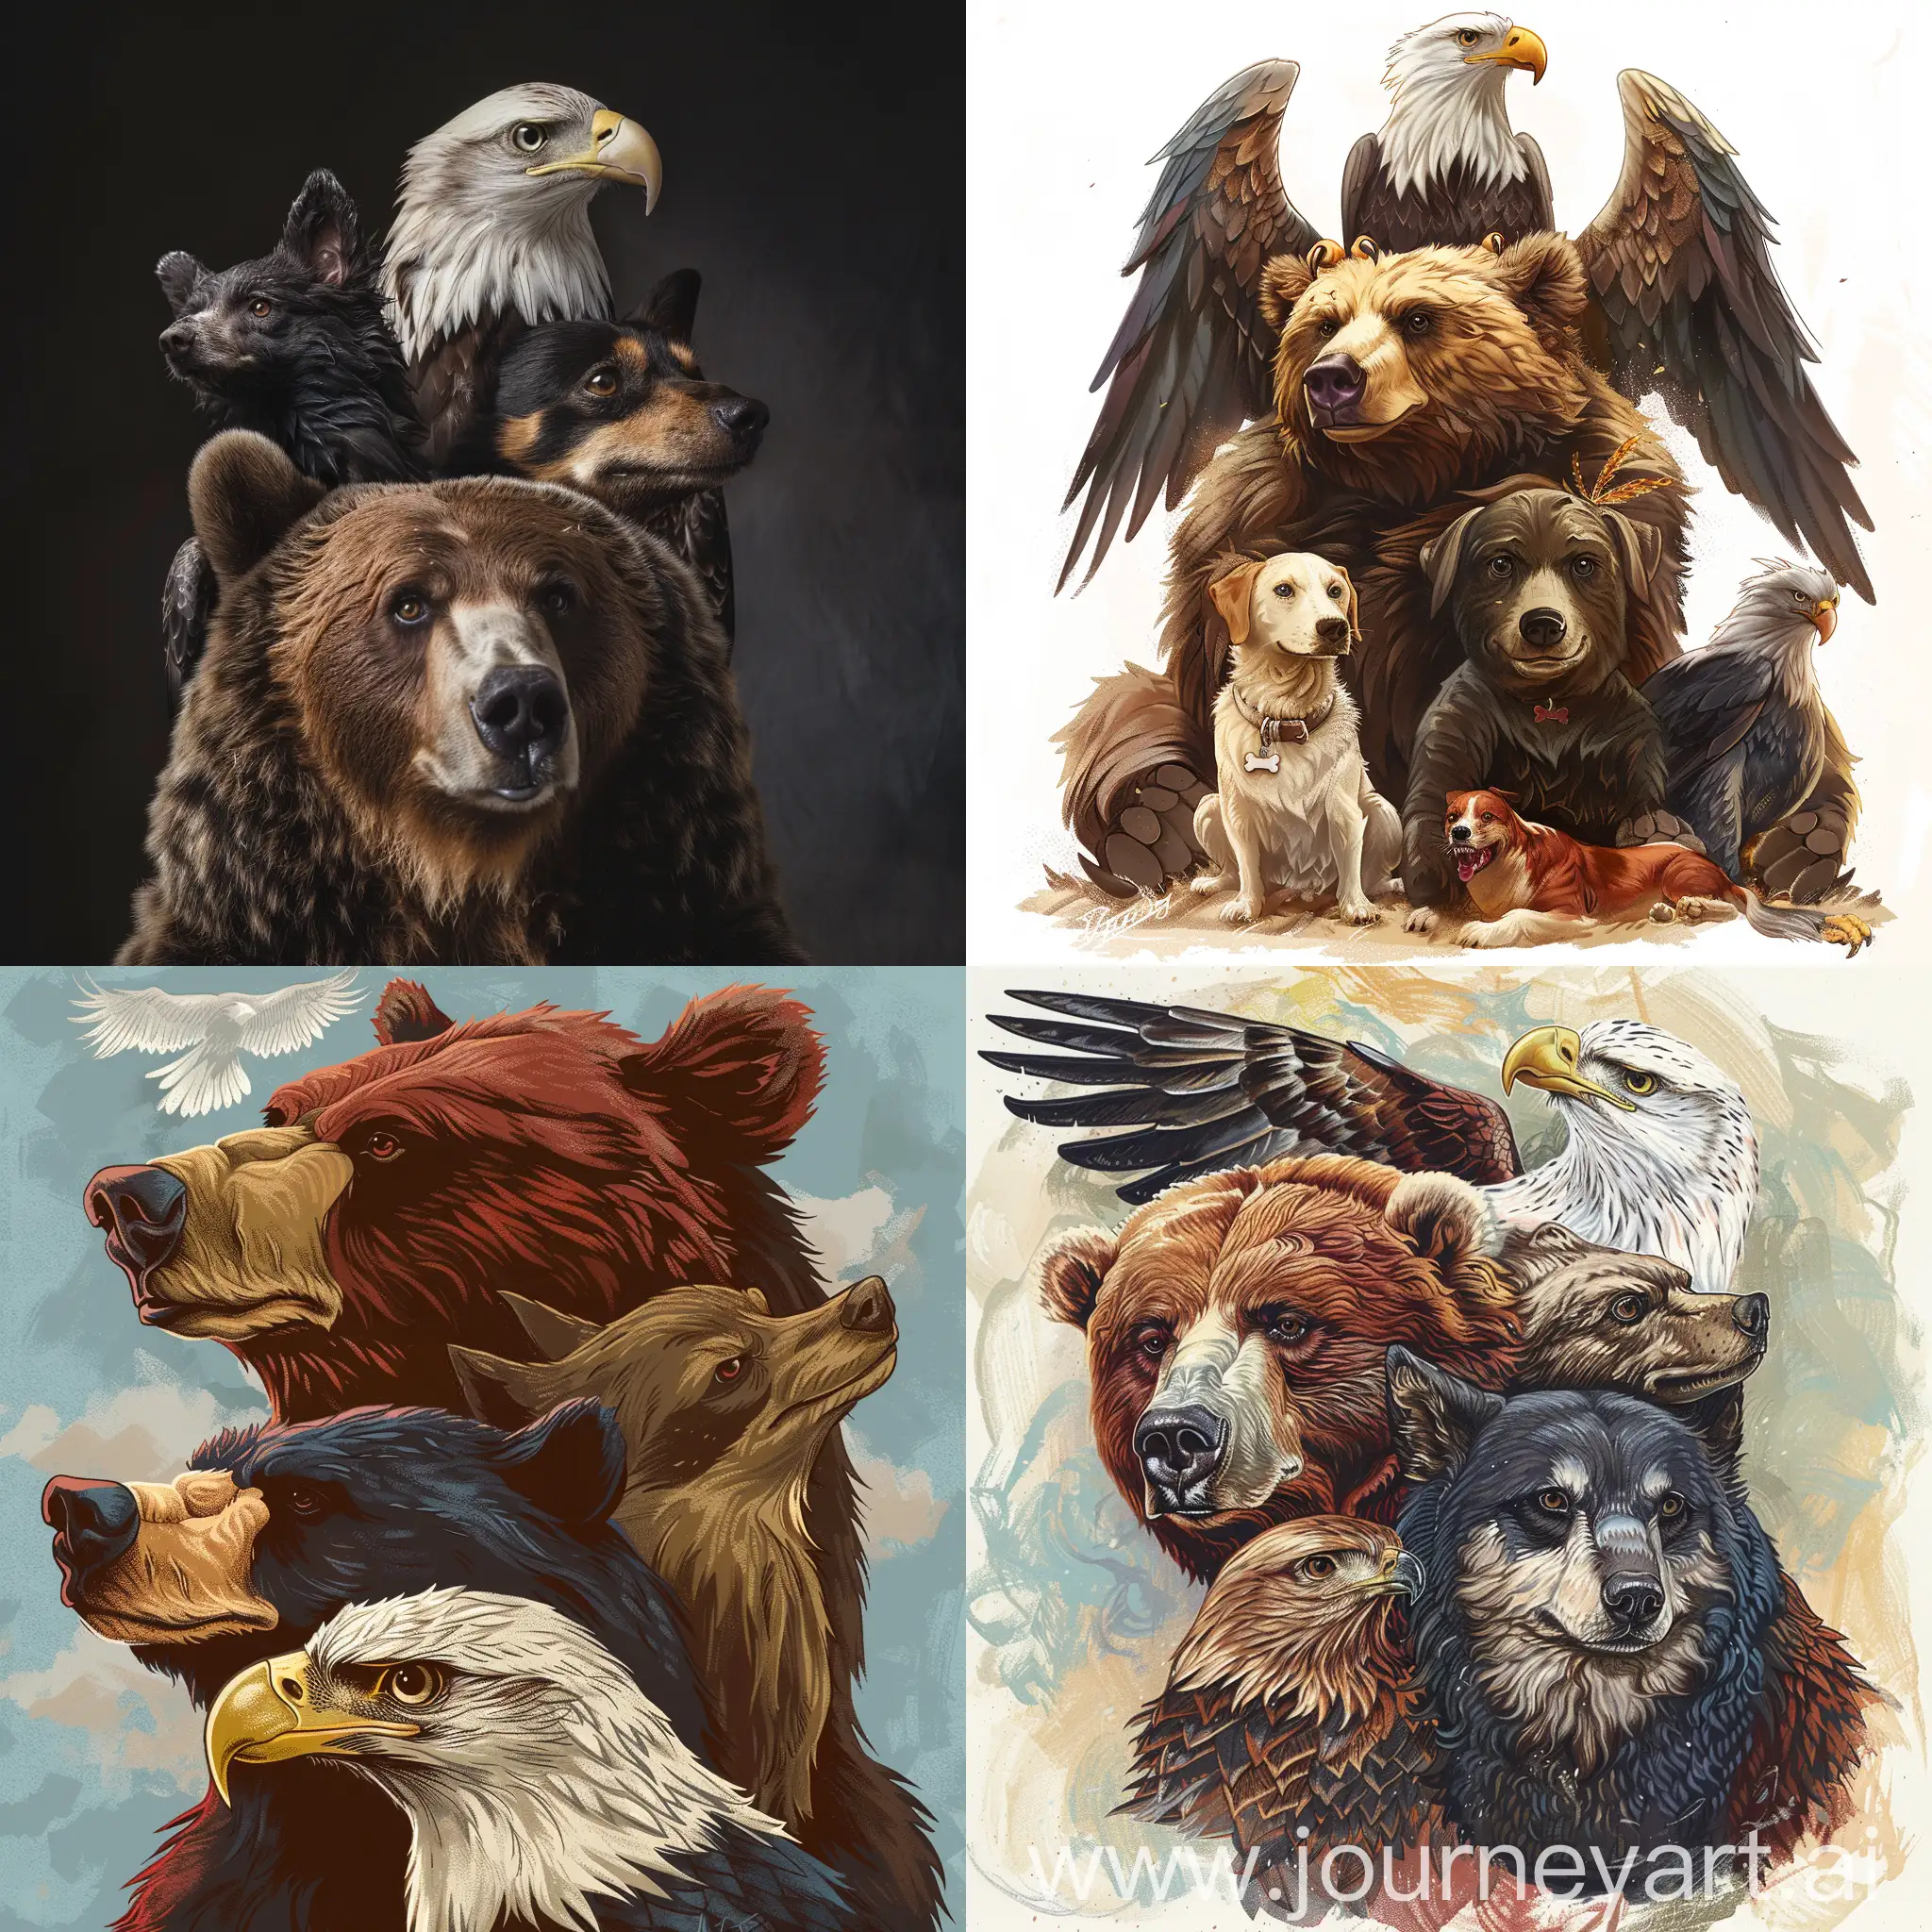 Fantasy-Creature-Fusion-Bear-Eagle-and-Dog-Hybrid